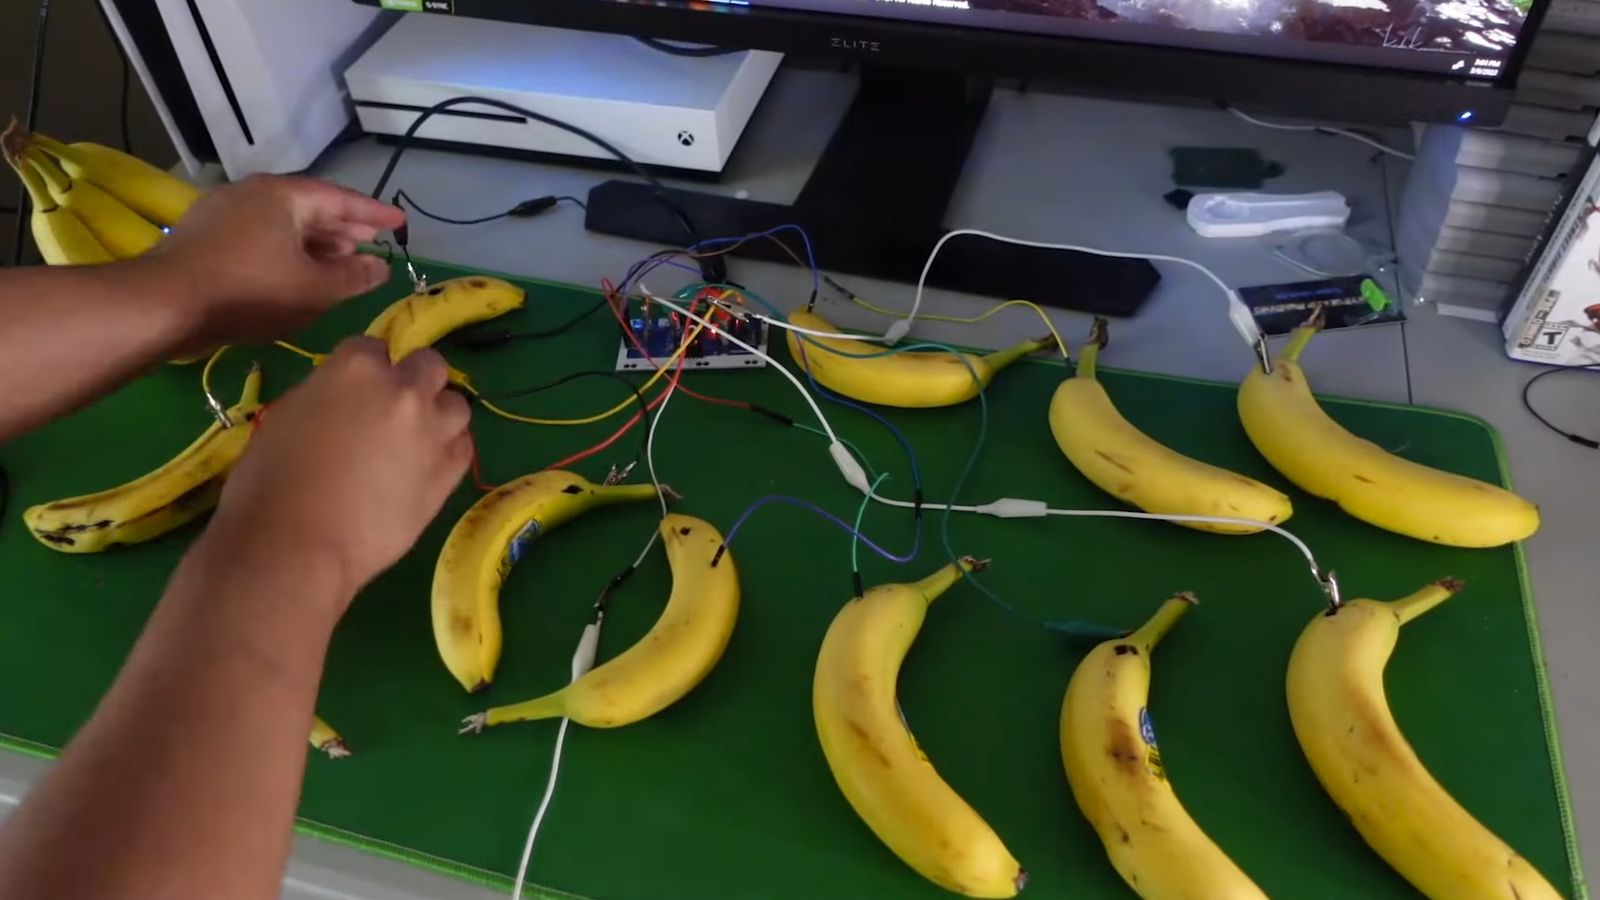 banana controller